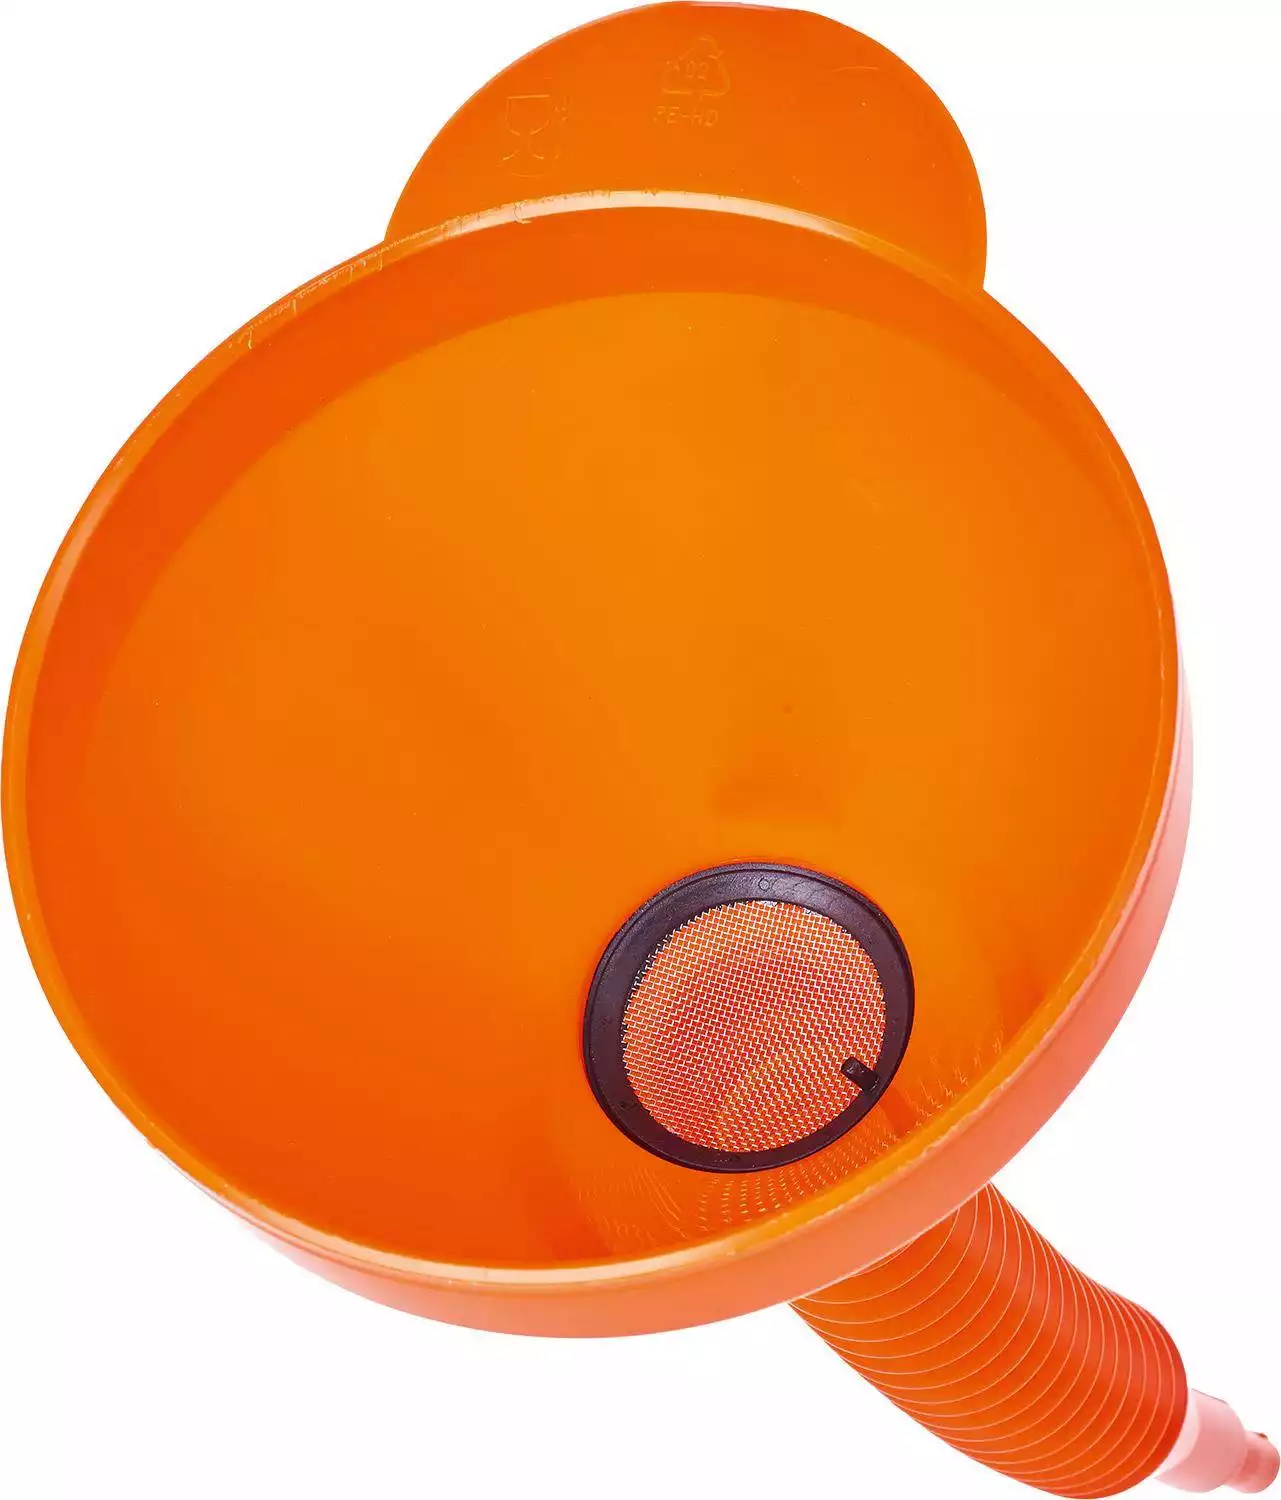 Trichter Ø 160mm Orange für Flüssigkeiten mit starrer Auslauf, Sieb und  Handgriff - CROP